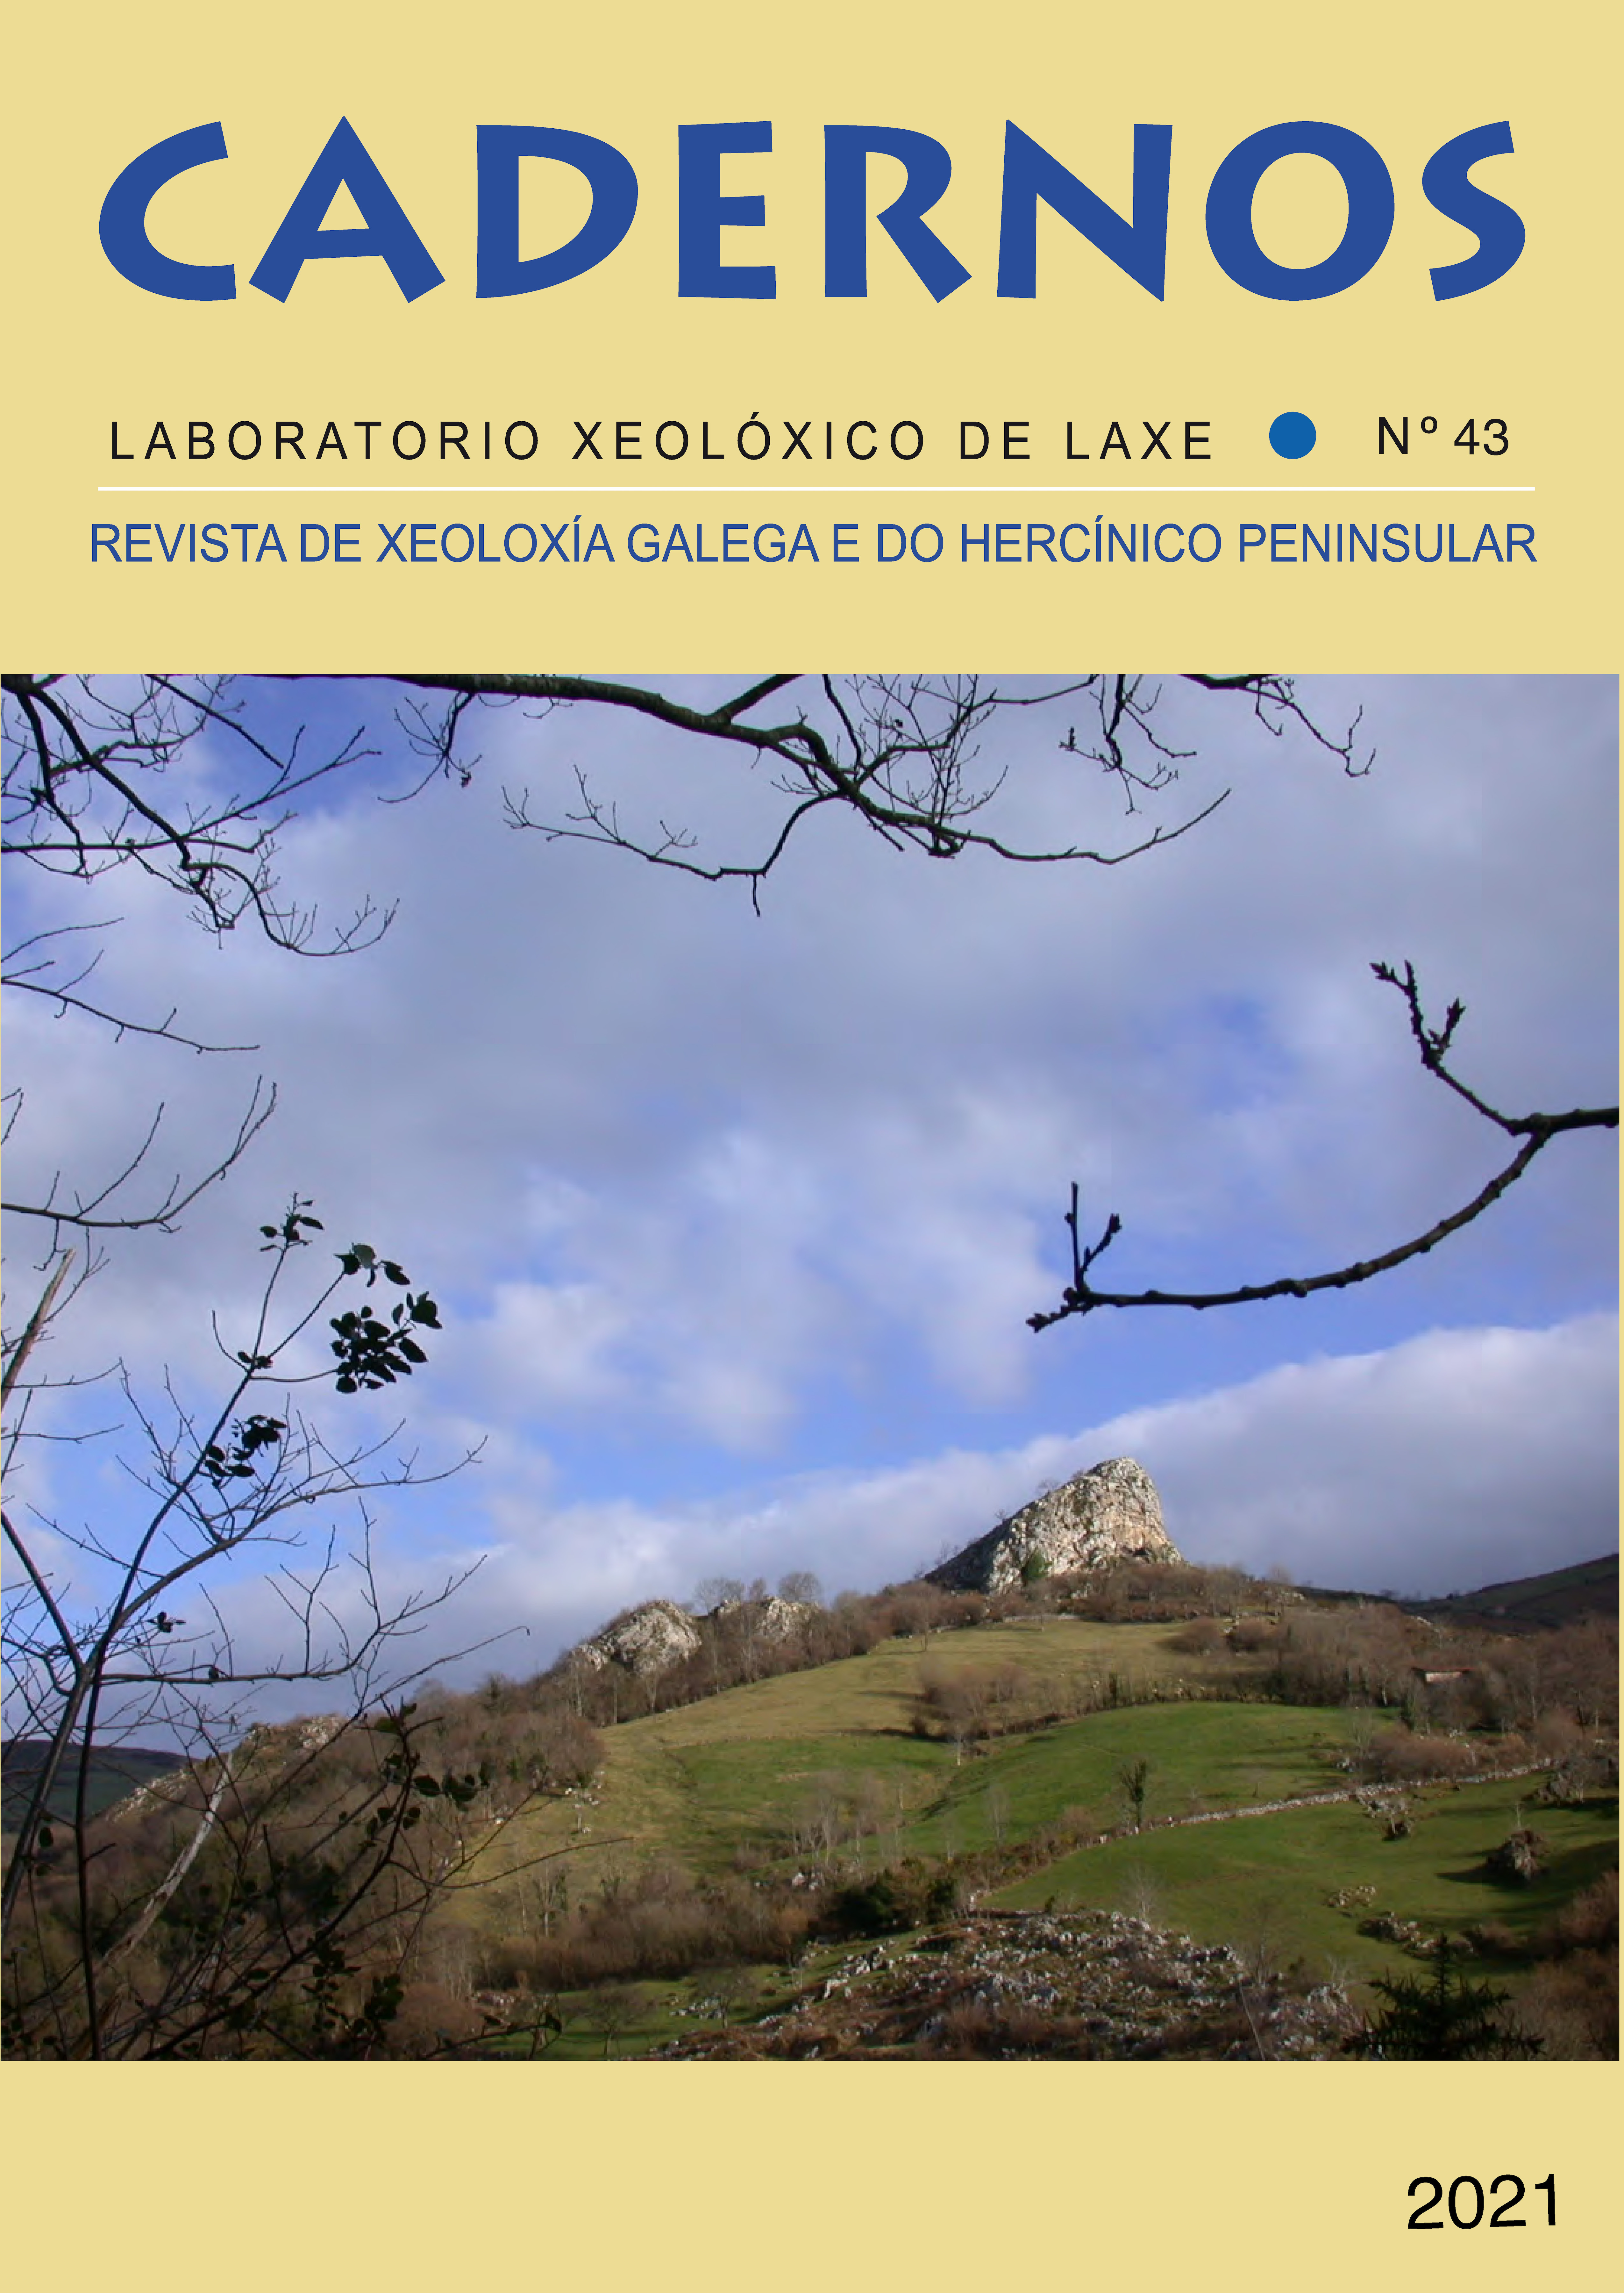 Abrigo de Sopeña (Concejo de Onís, Asturias), yacimiento que registra la transición del Paleolítico Medio al Paleolítico Superior